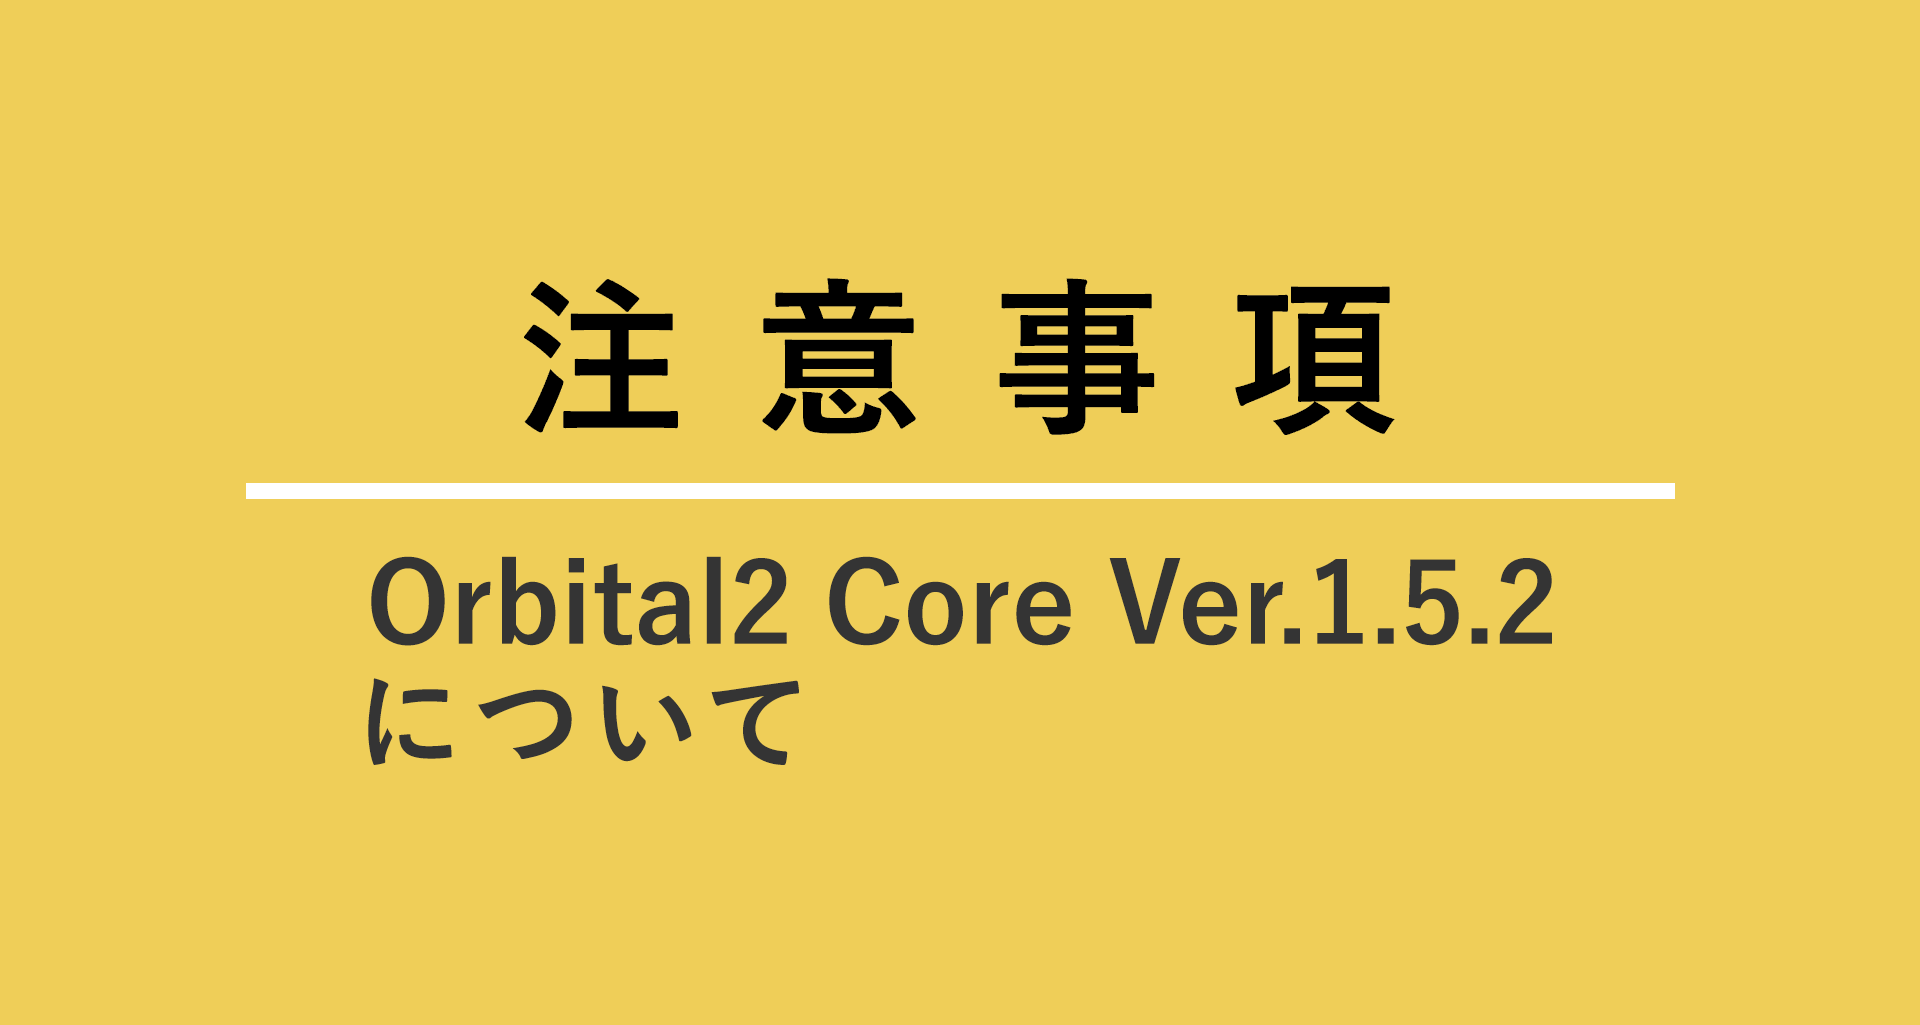 Orbital2 Core  Ver.1.5.2について